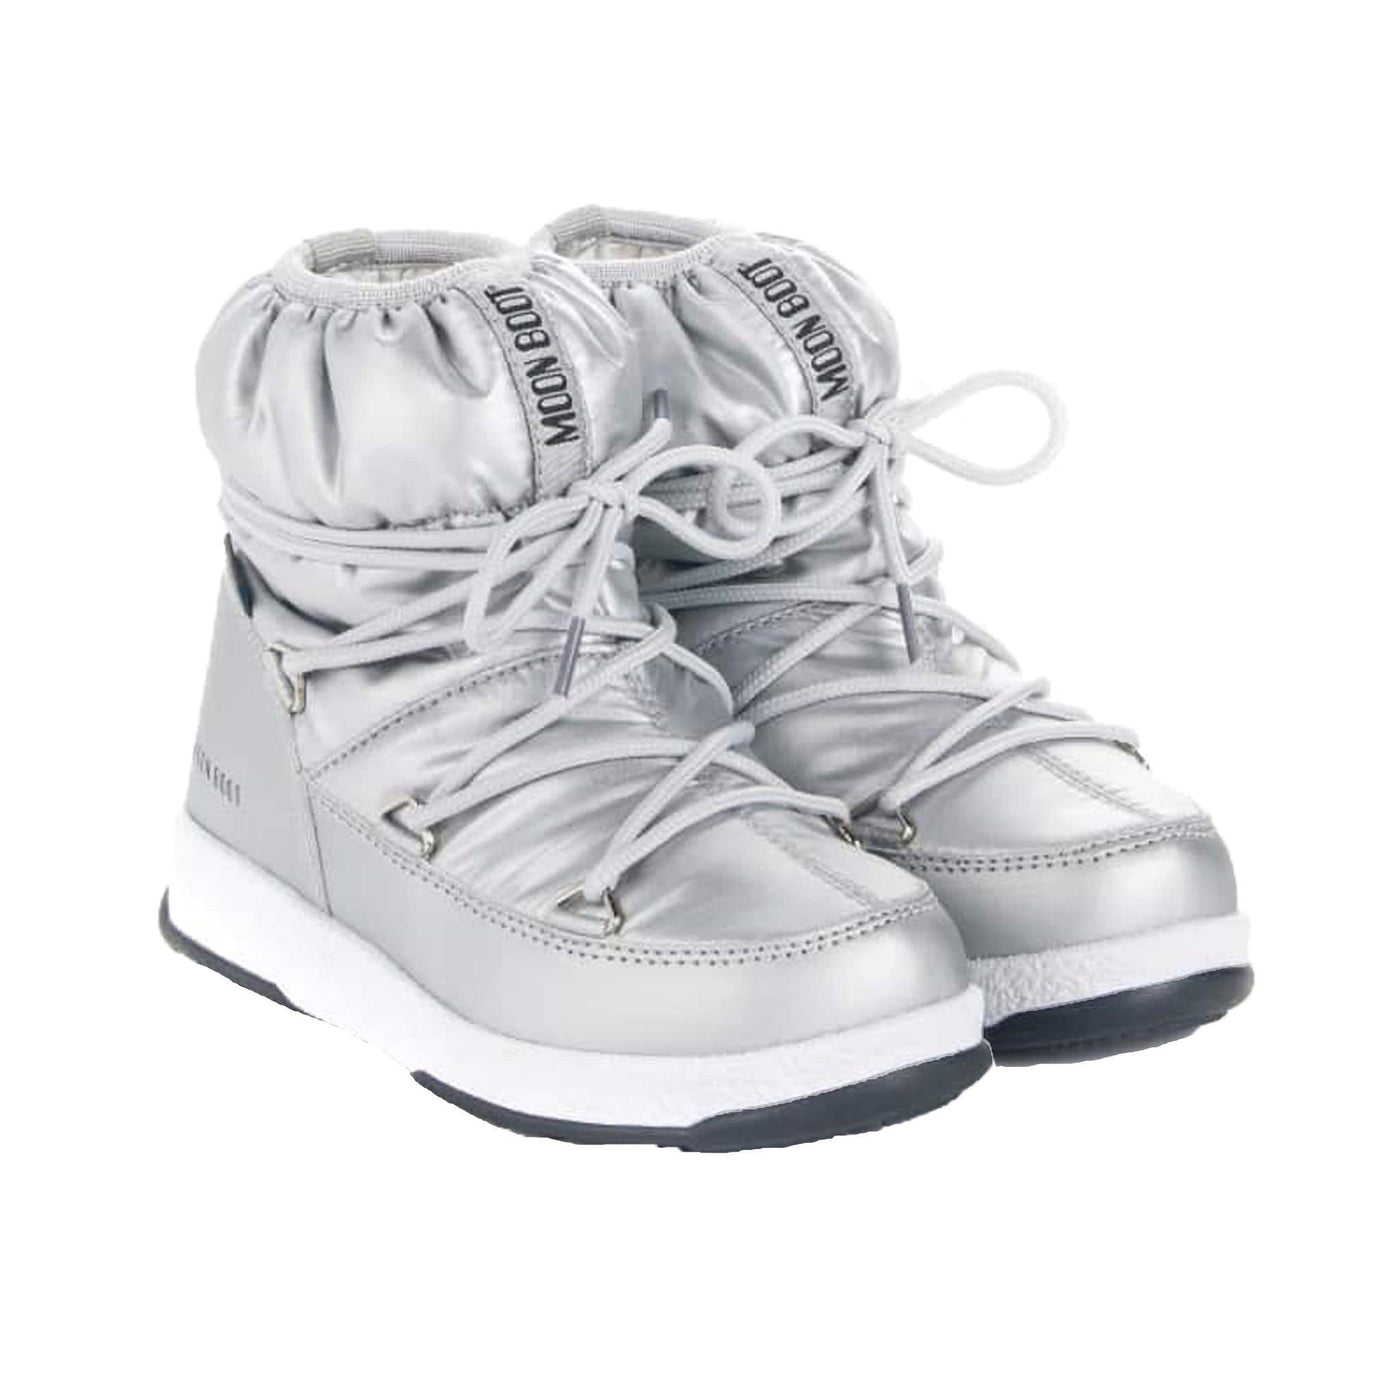 SnowKids Footwear Moon Boot Jr Girl Low Nylon WP Boot - Silver